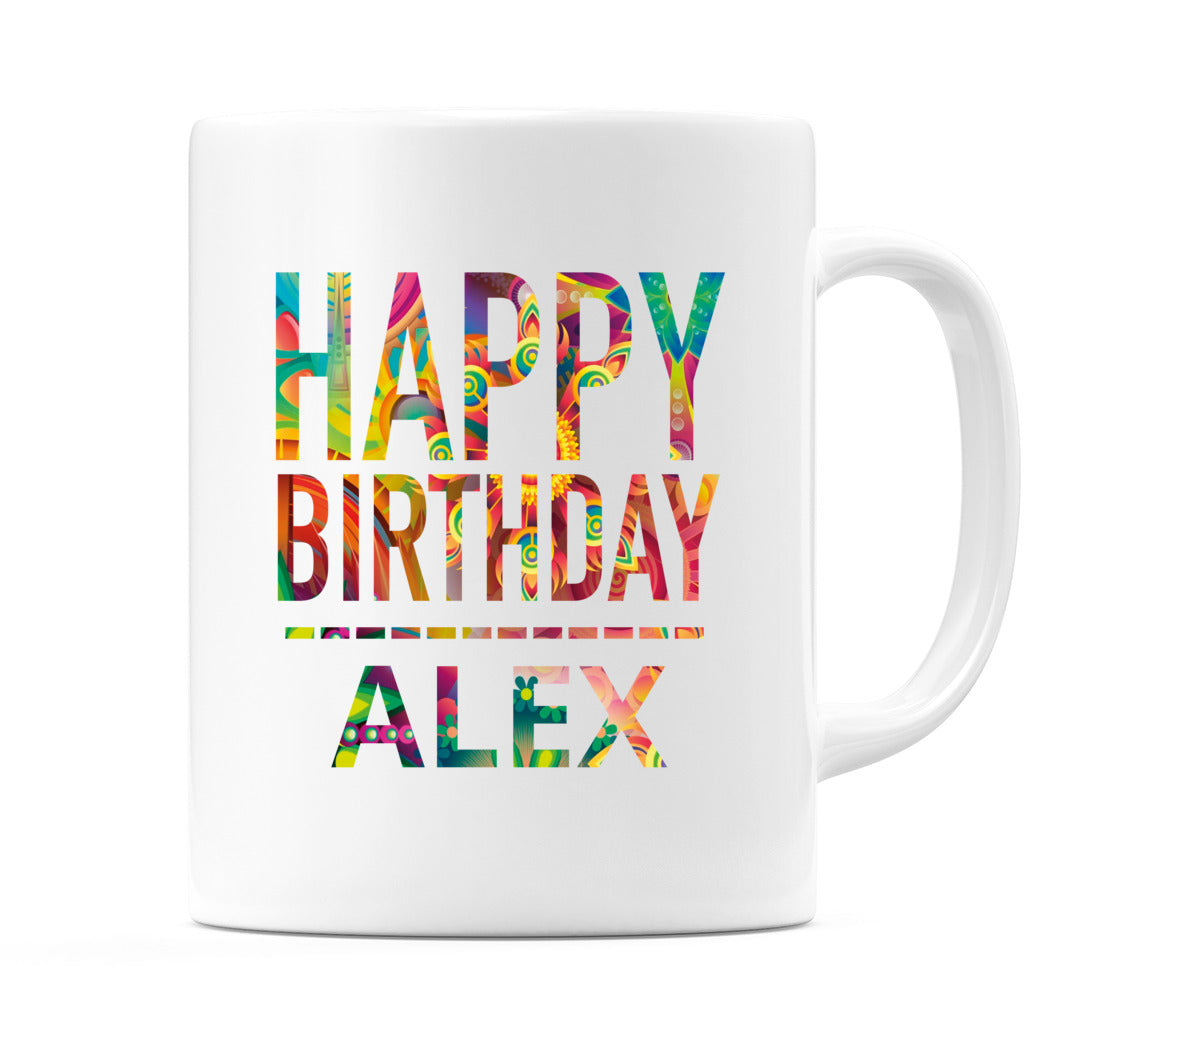 Happy Birthday Alex (Tie Dye Effect) Mug Cup by WeDoMugs